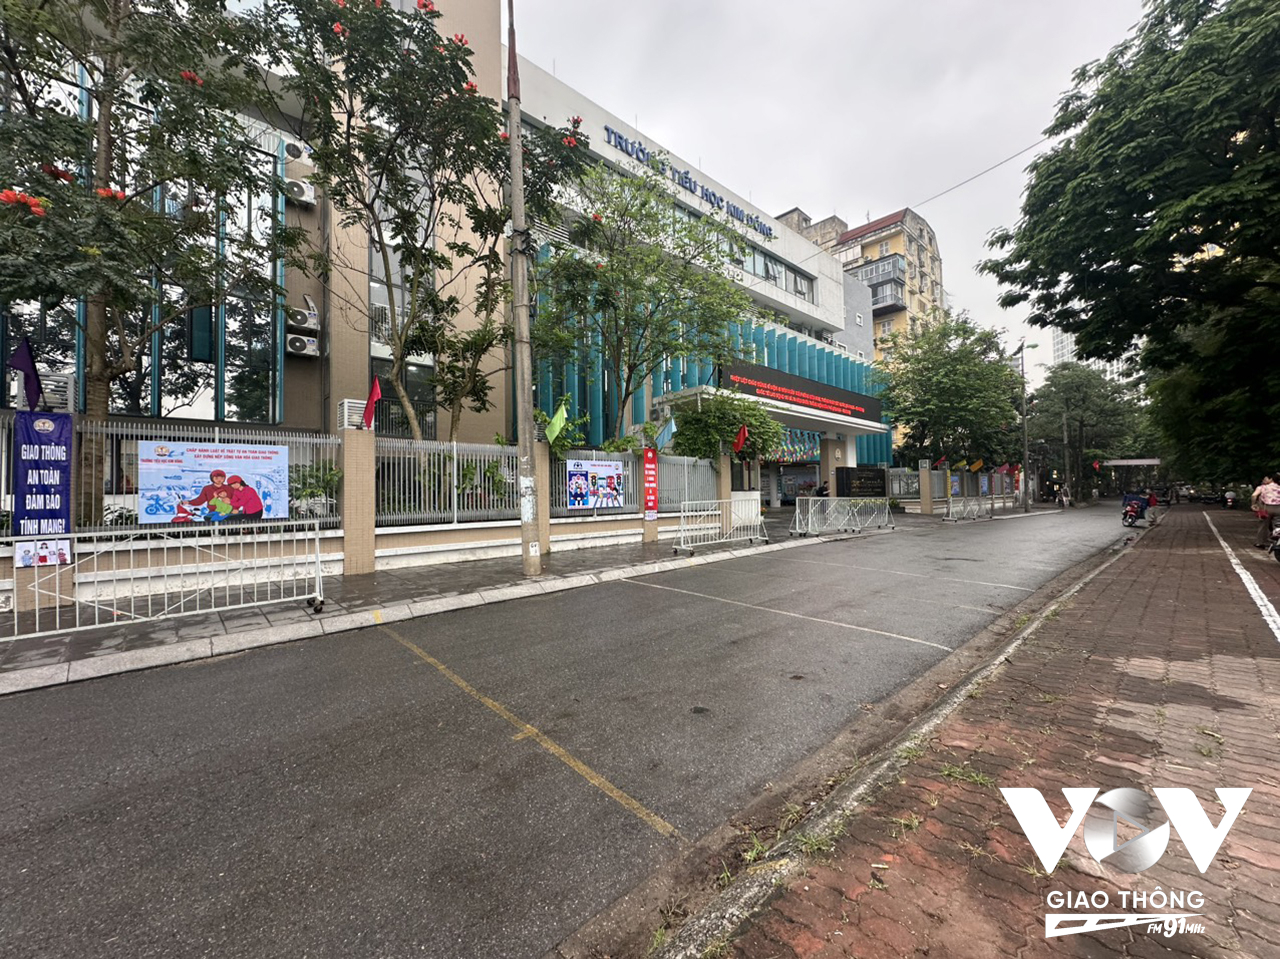 Sau khi phát động mô hình Cổng trường an toàn giao thông, khu vực các cổng trường trên địa bàn quận Ba Đình đã phong quang, không còn cảnh chiếm dụng lòng đường, hè phố.